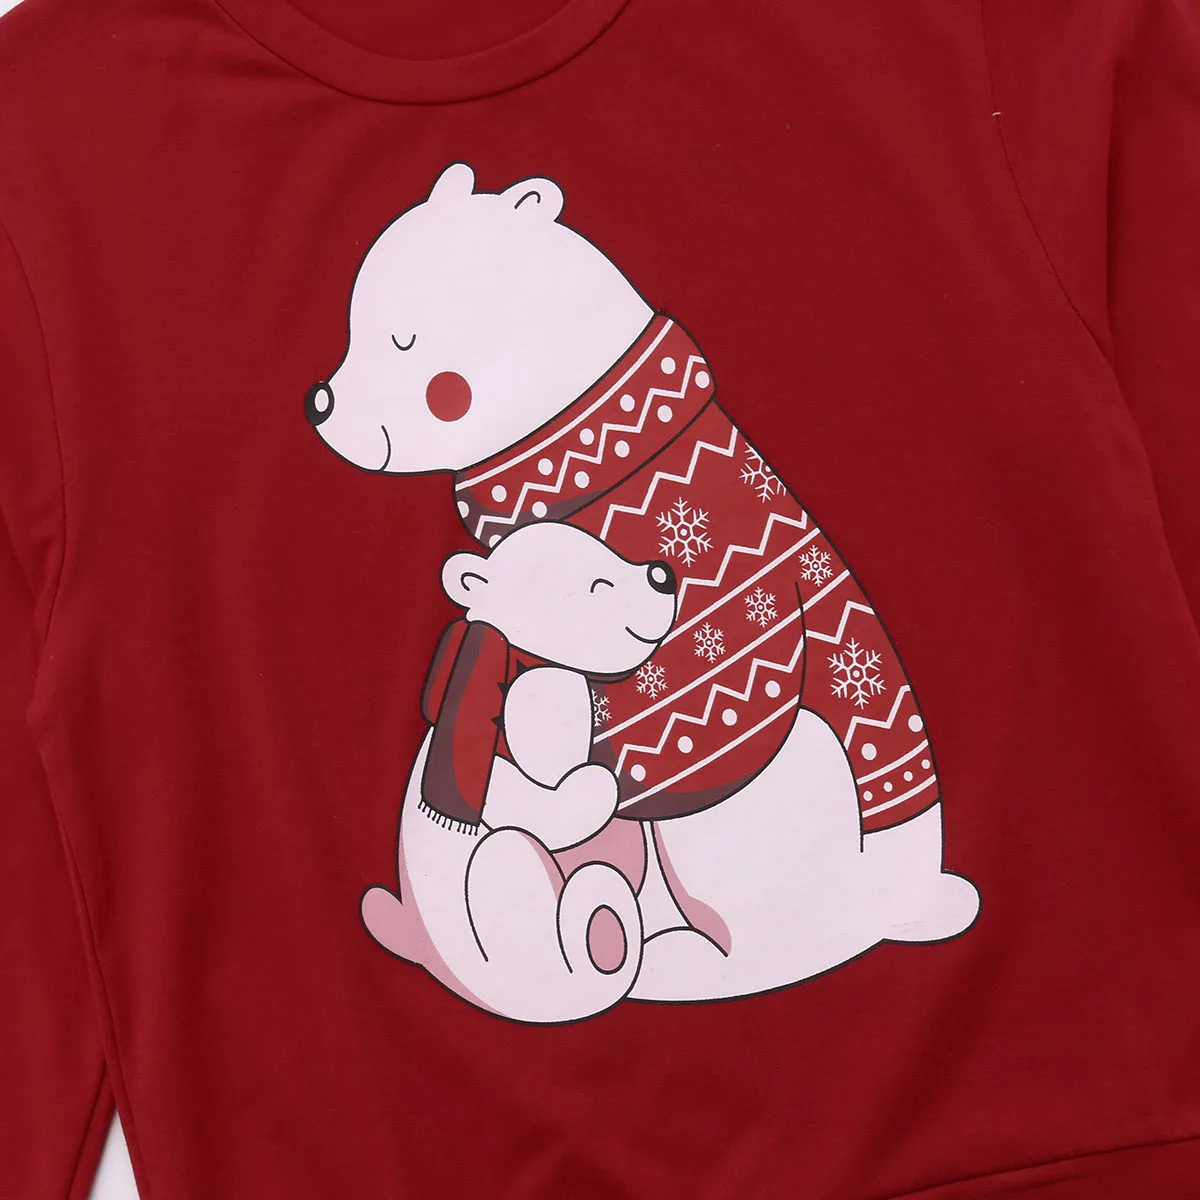 Рождественский семейный свитер для женщин, мужчин и детей, свитер, семейная Рождественская футболка с милым медведем, одежда